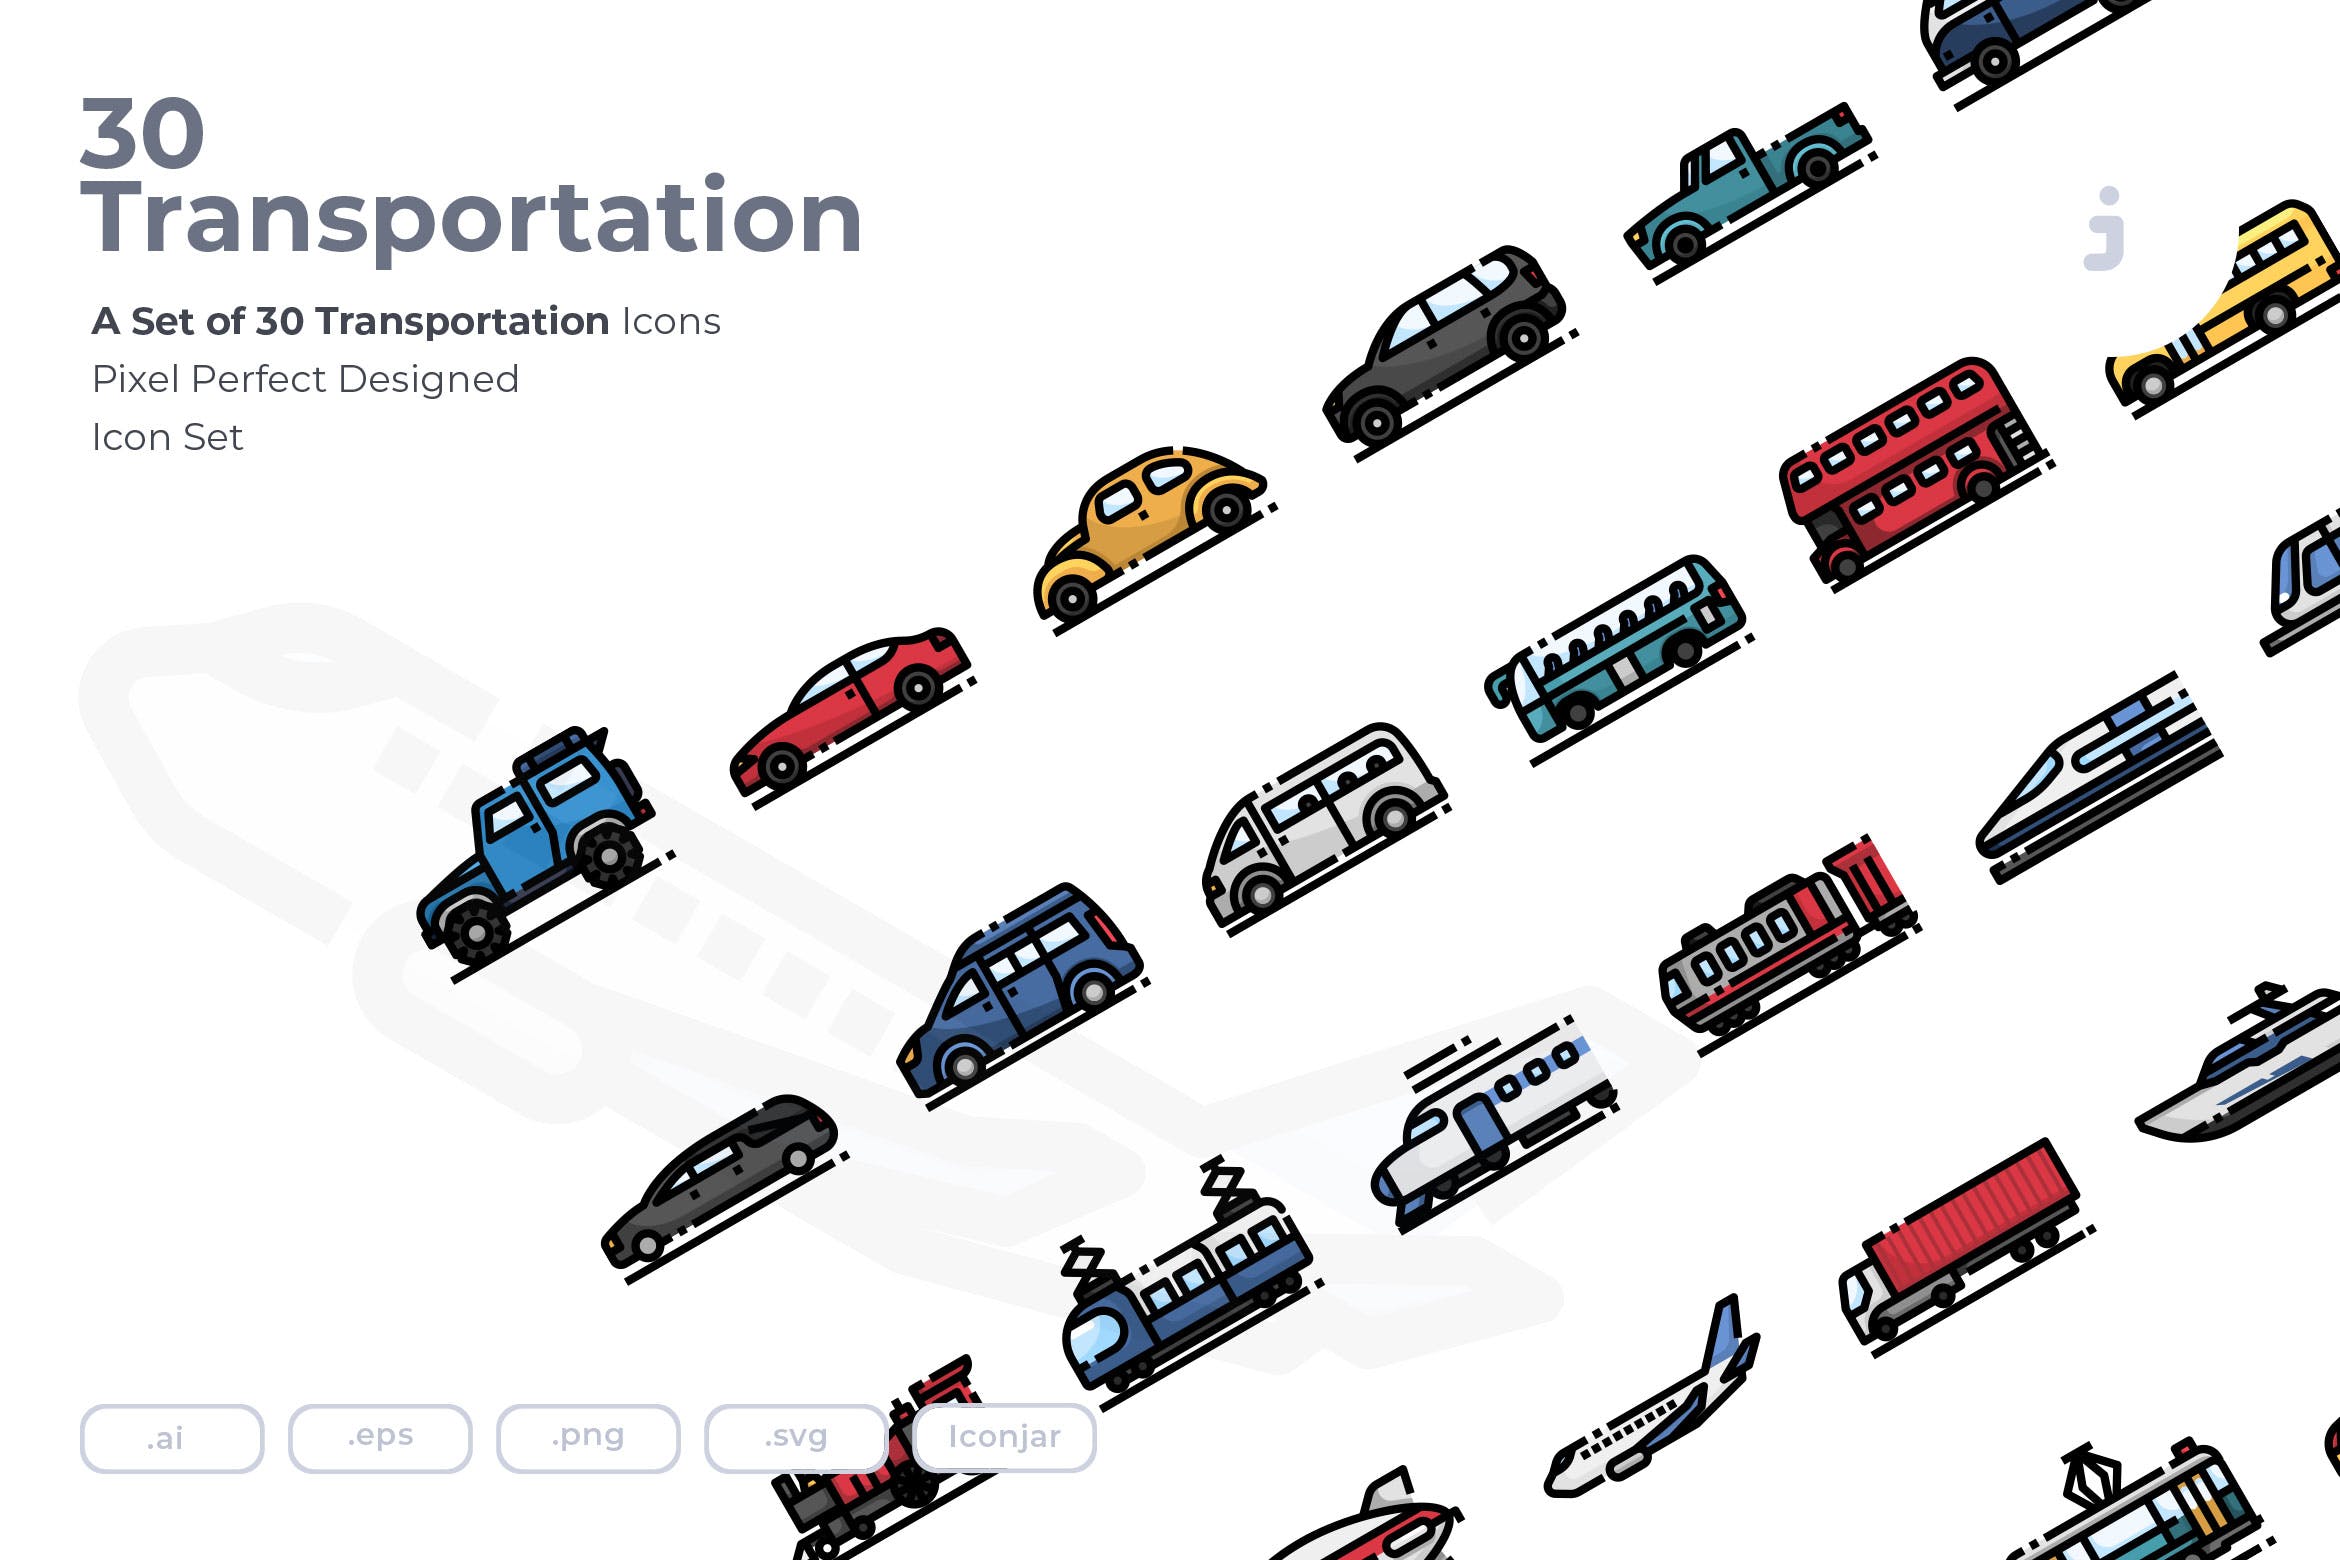 30枚现代交通工具矢量非凡图库精选图标 30 Transportation Icons插图